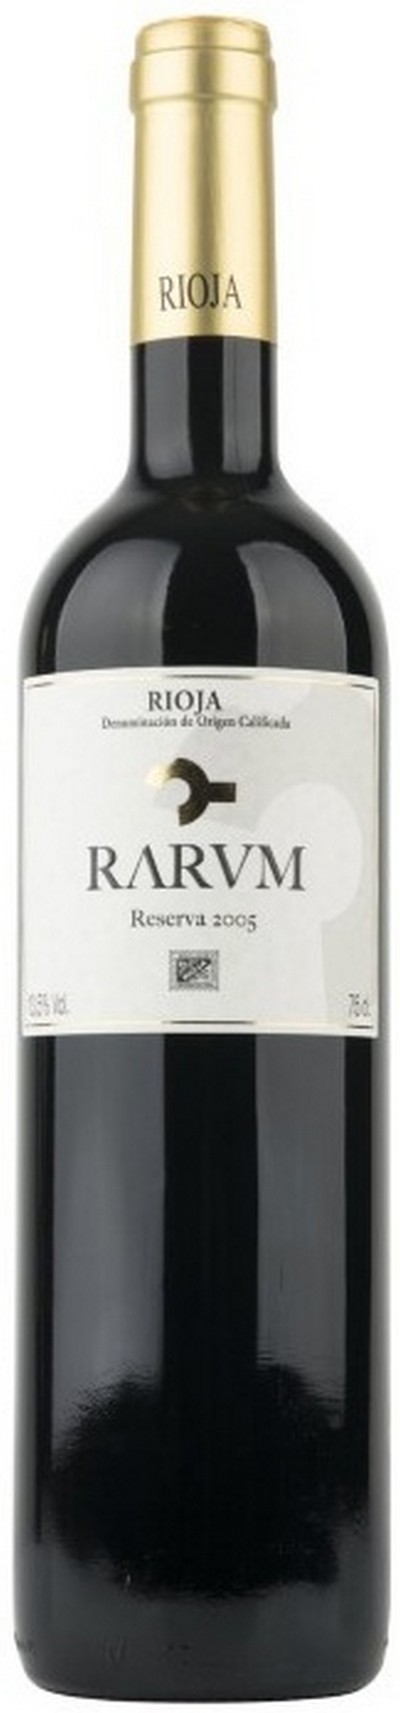 rarum-rioja-reserva-2005